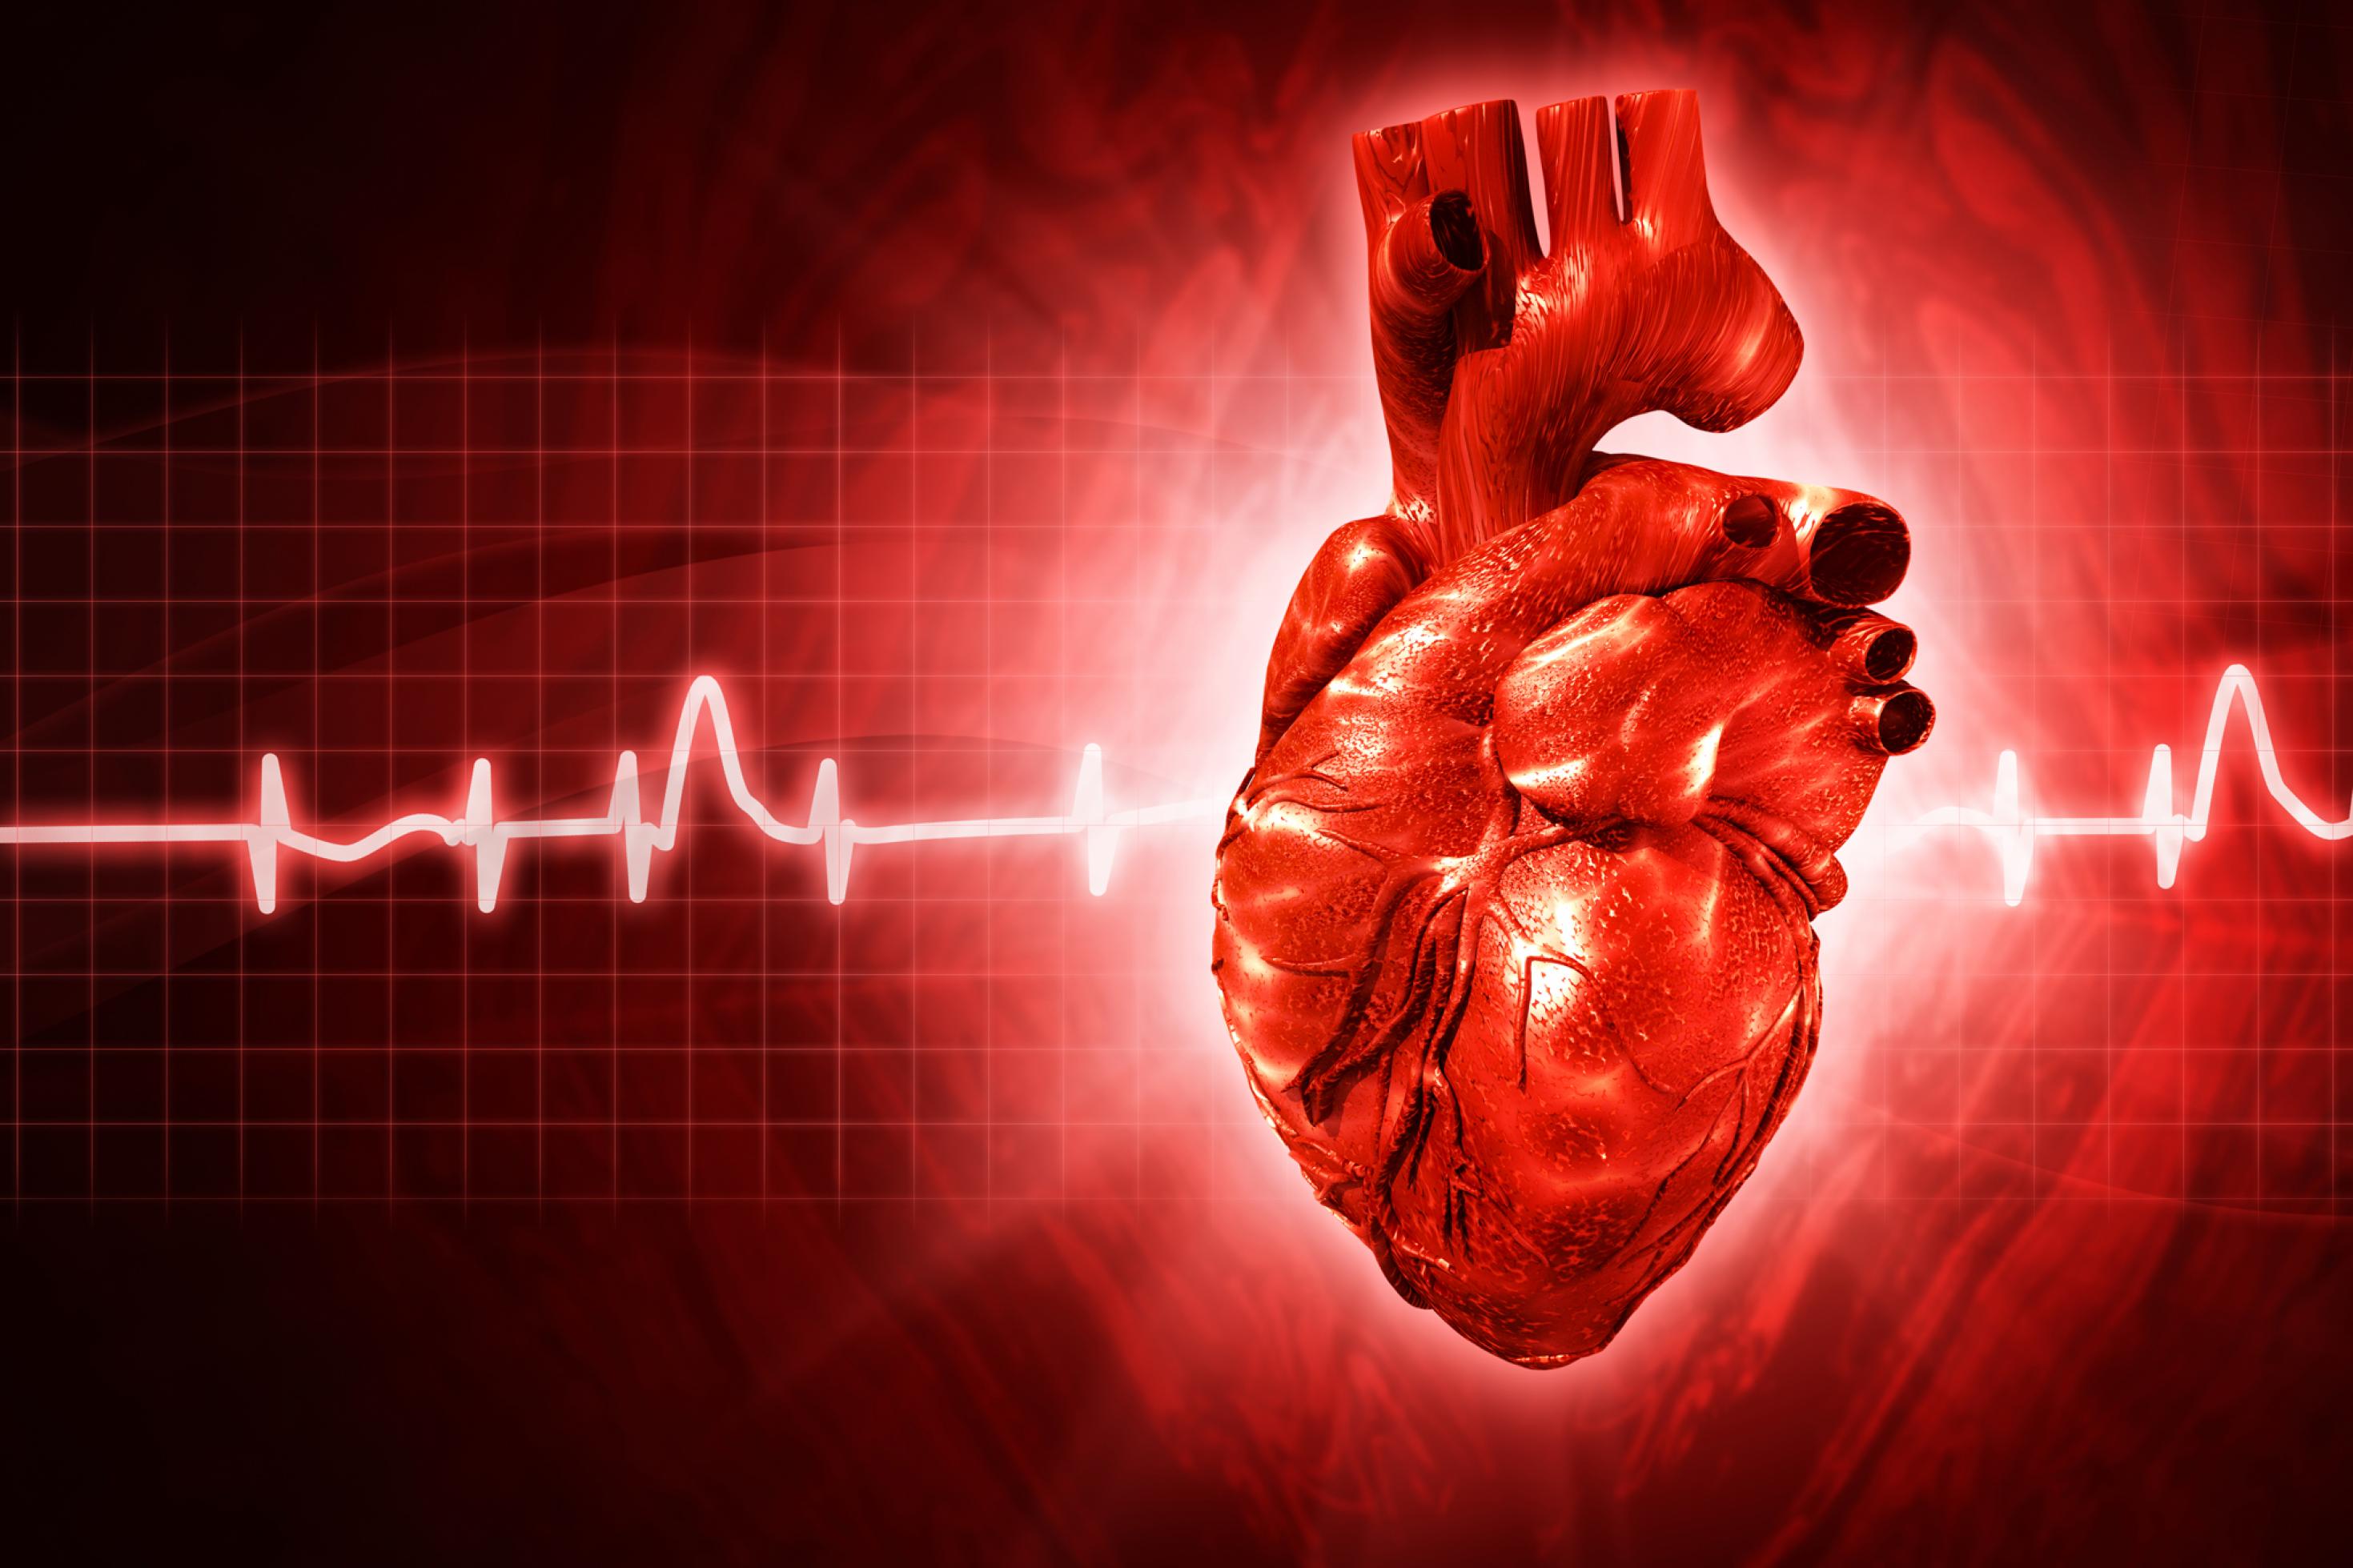 Das Bild zeigt in roter Farbe vor schwarzem Hintergrund die grafische Darstellung eines menschlichen Herzens und dazu horizontal durchlaufend die Rhythmuskurve – das EKG – des schlagenden Herzens.